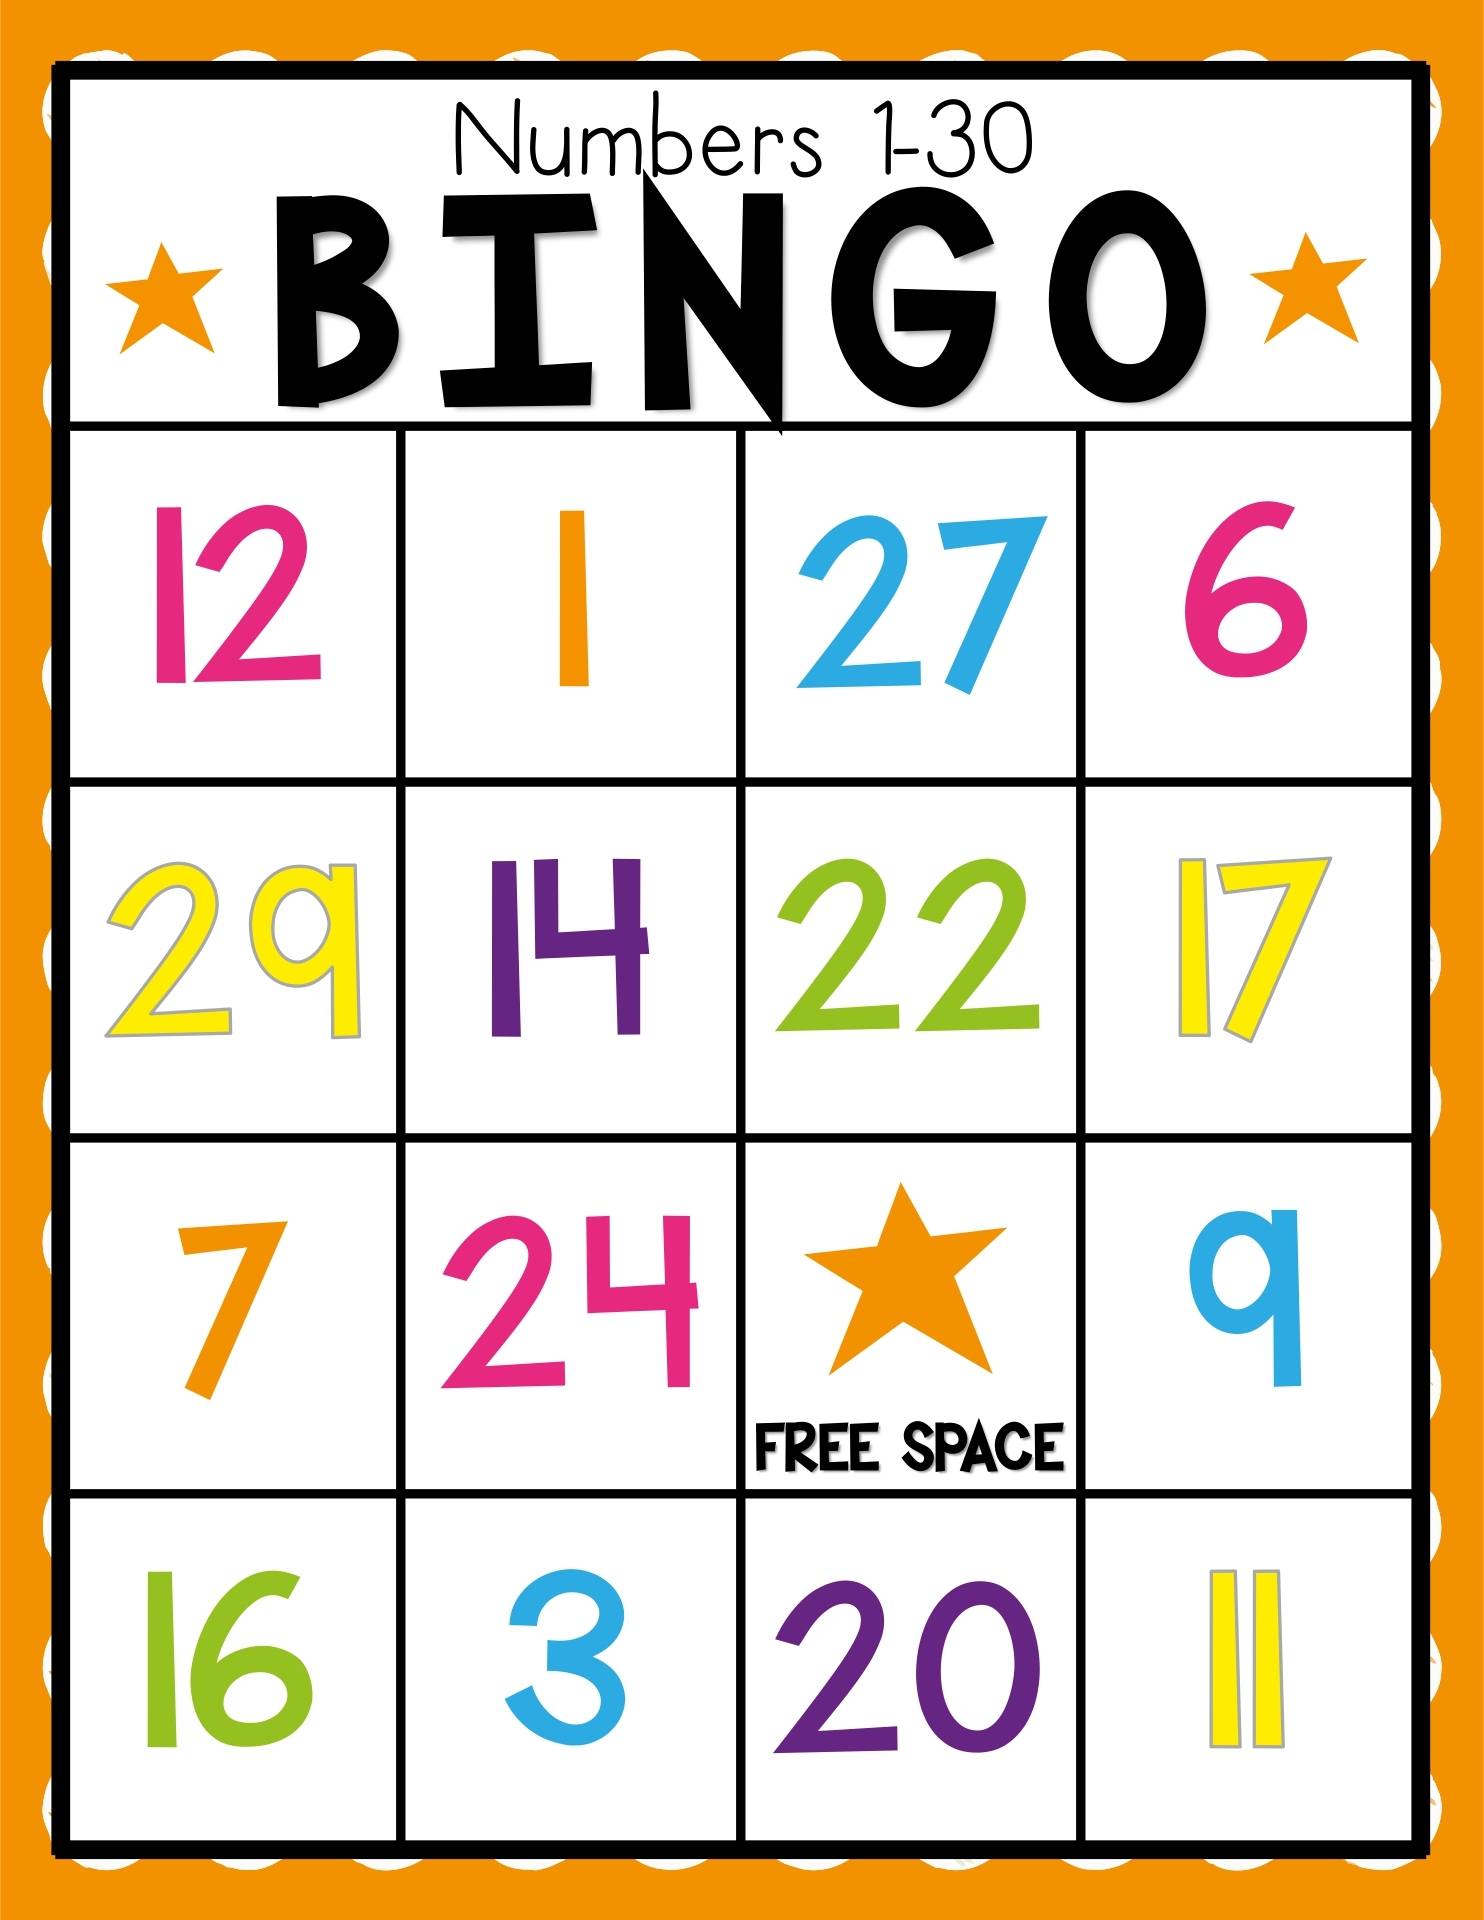 bingo numbers 1 75 caller